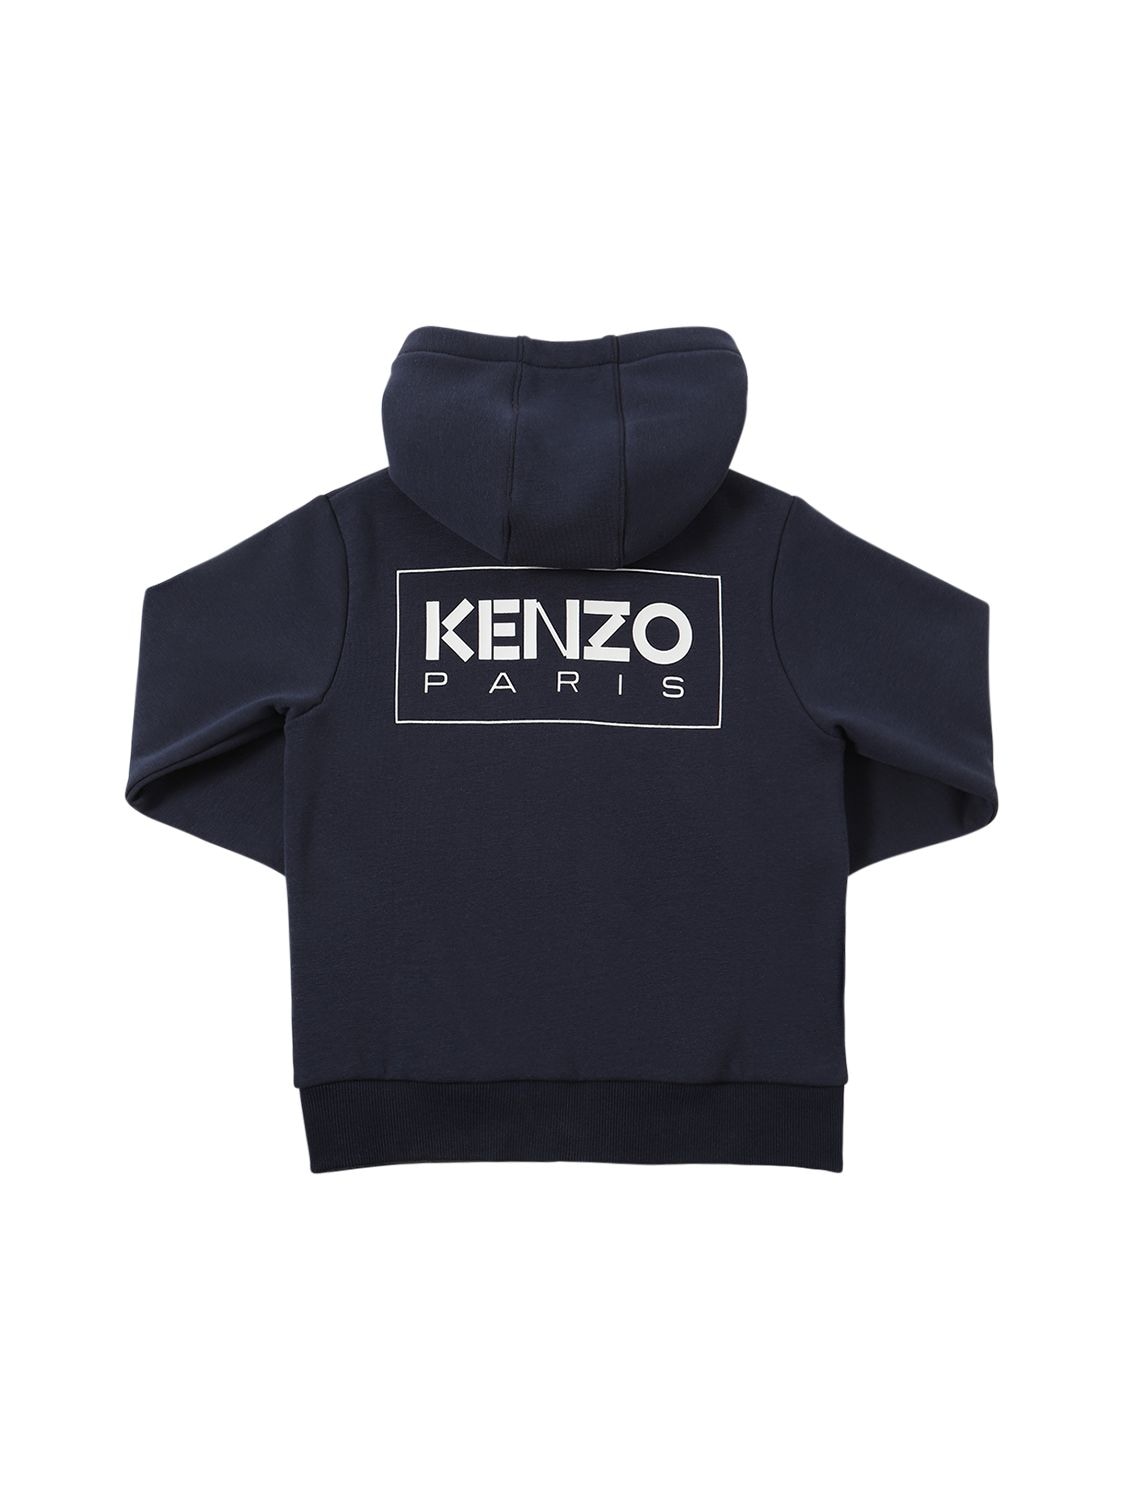 Kenzo Kids' Cotton Zip-up Hoodie W/ Logo In Navy